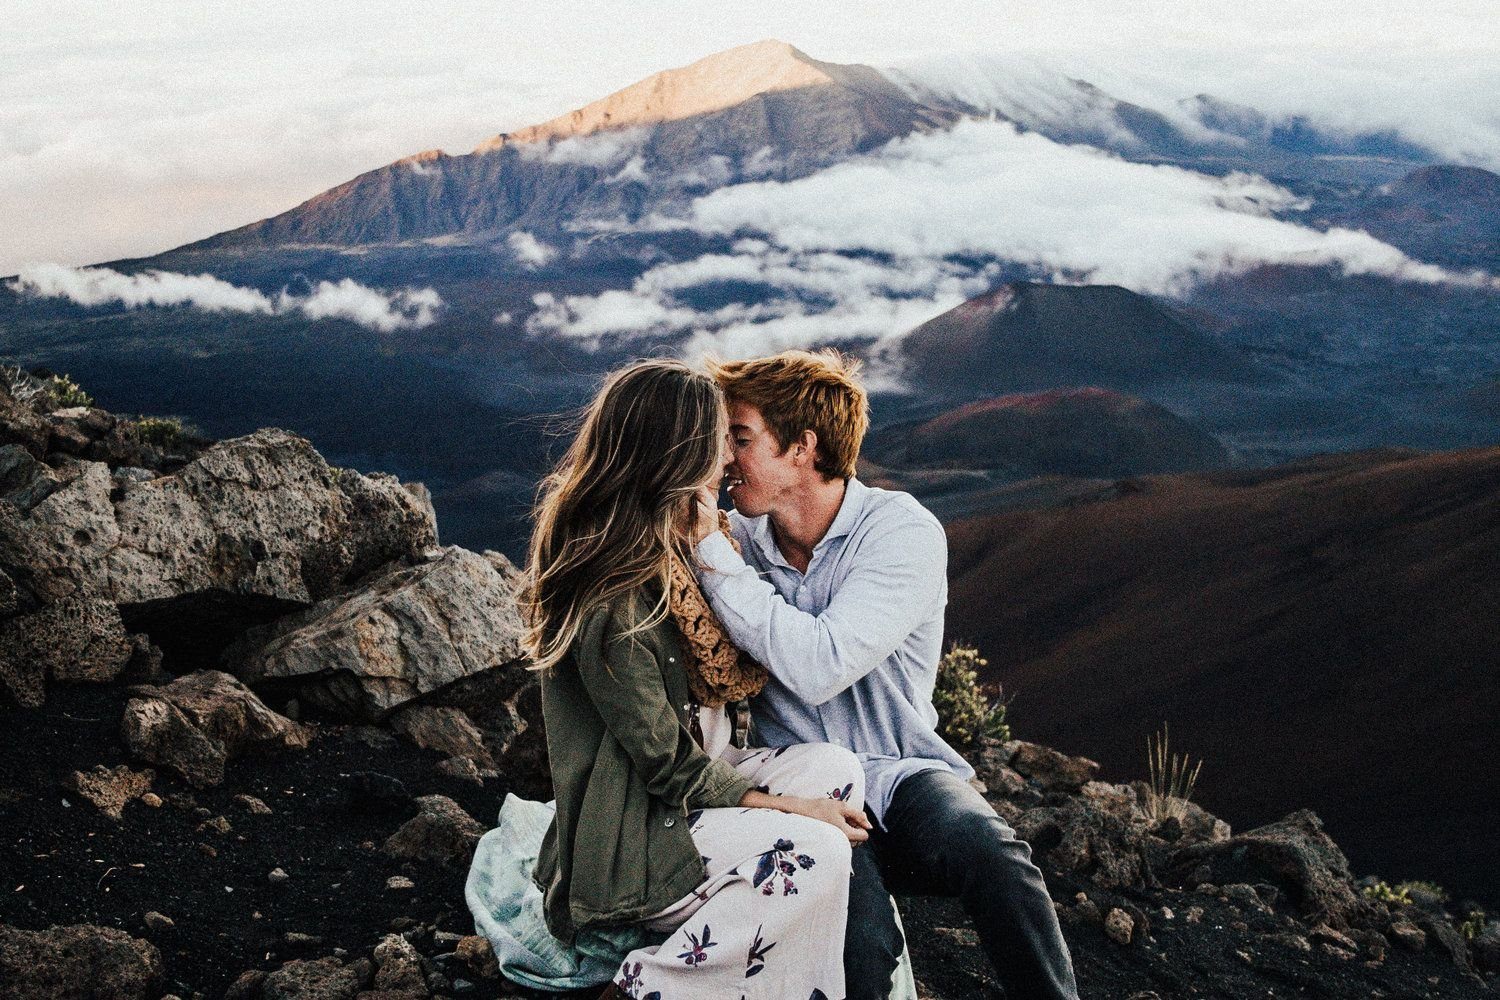 V пара. Влюбленные в горах. Влюблённая пара в горах. Поцелуй в горах. Романтические горы.